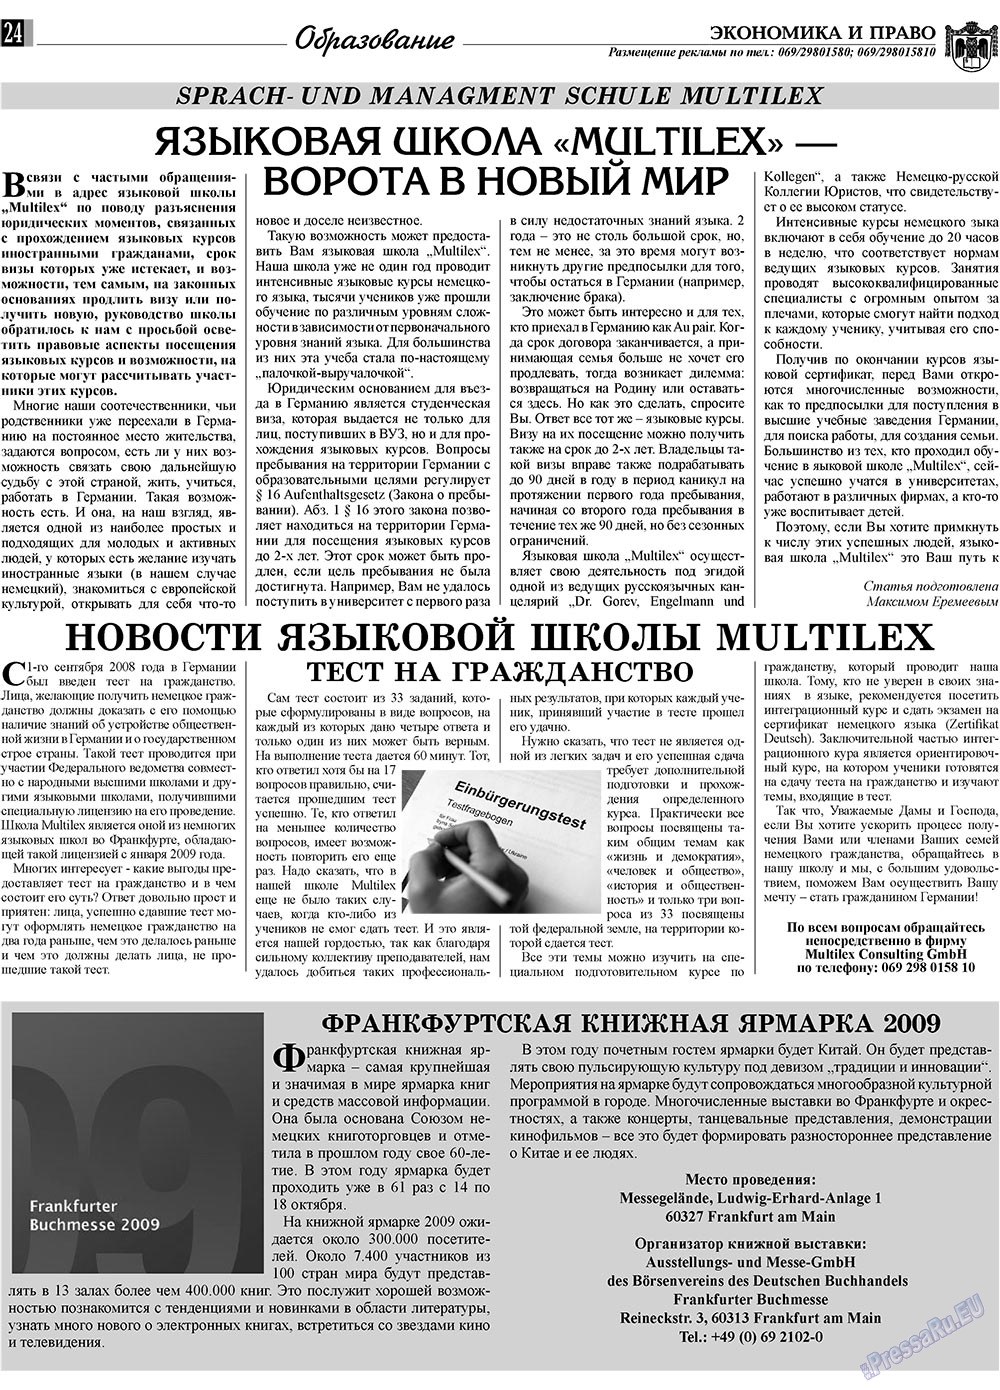 Экономика и право, газета. 2009 №10 стр.24